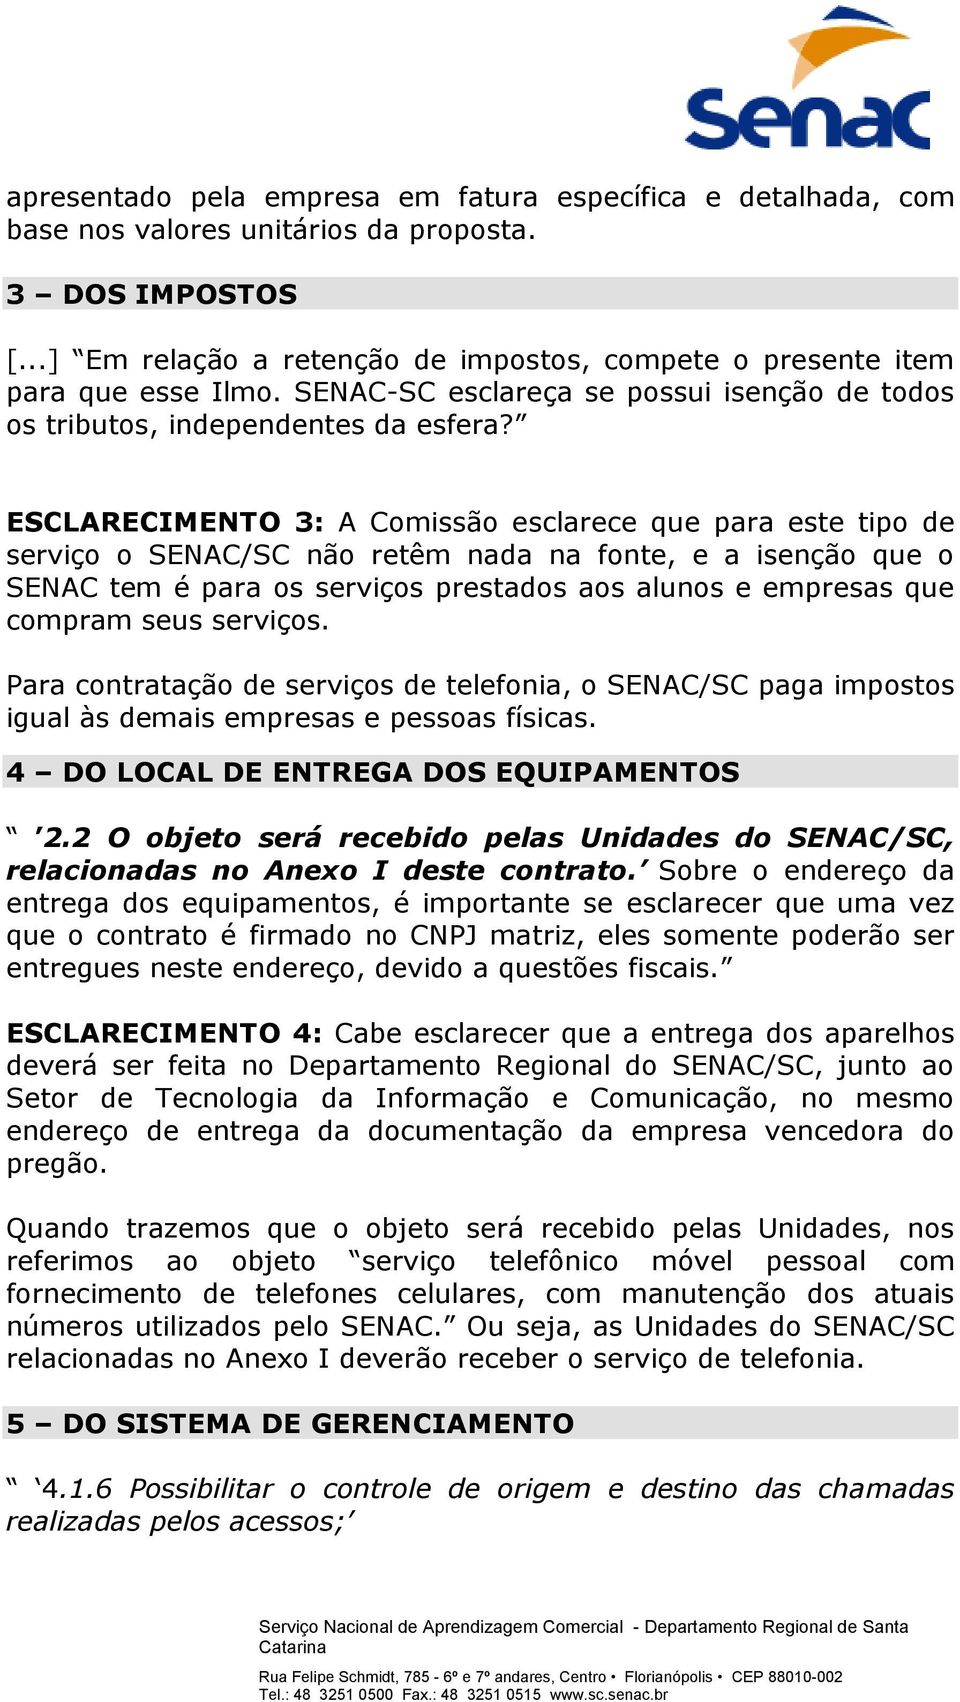 ESCLARECIMENTO 3: A Comissão esclarece que para este tipo de serviço o SENAC/SC não retêm nada na fonte, e a isenção que o SENAC tem é para os serviços prestados aos alunos e empresas que compram